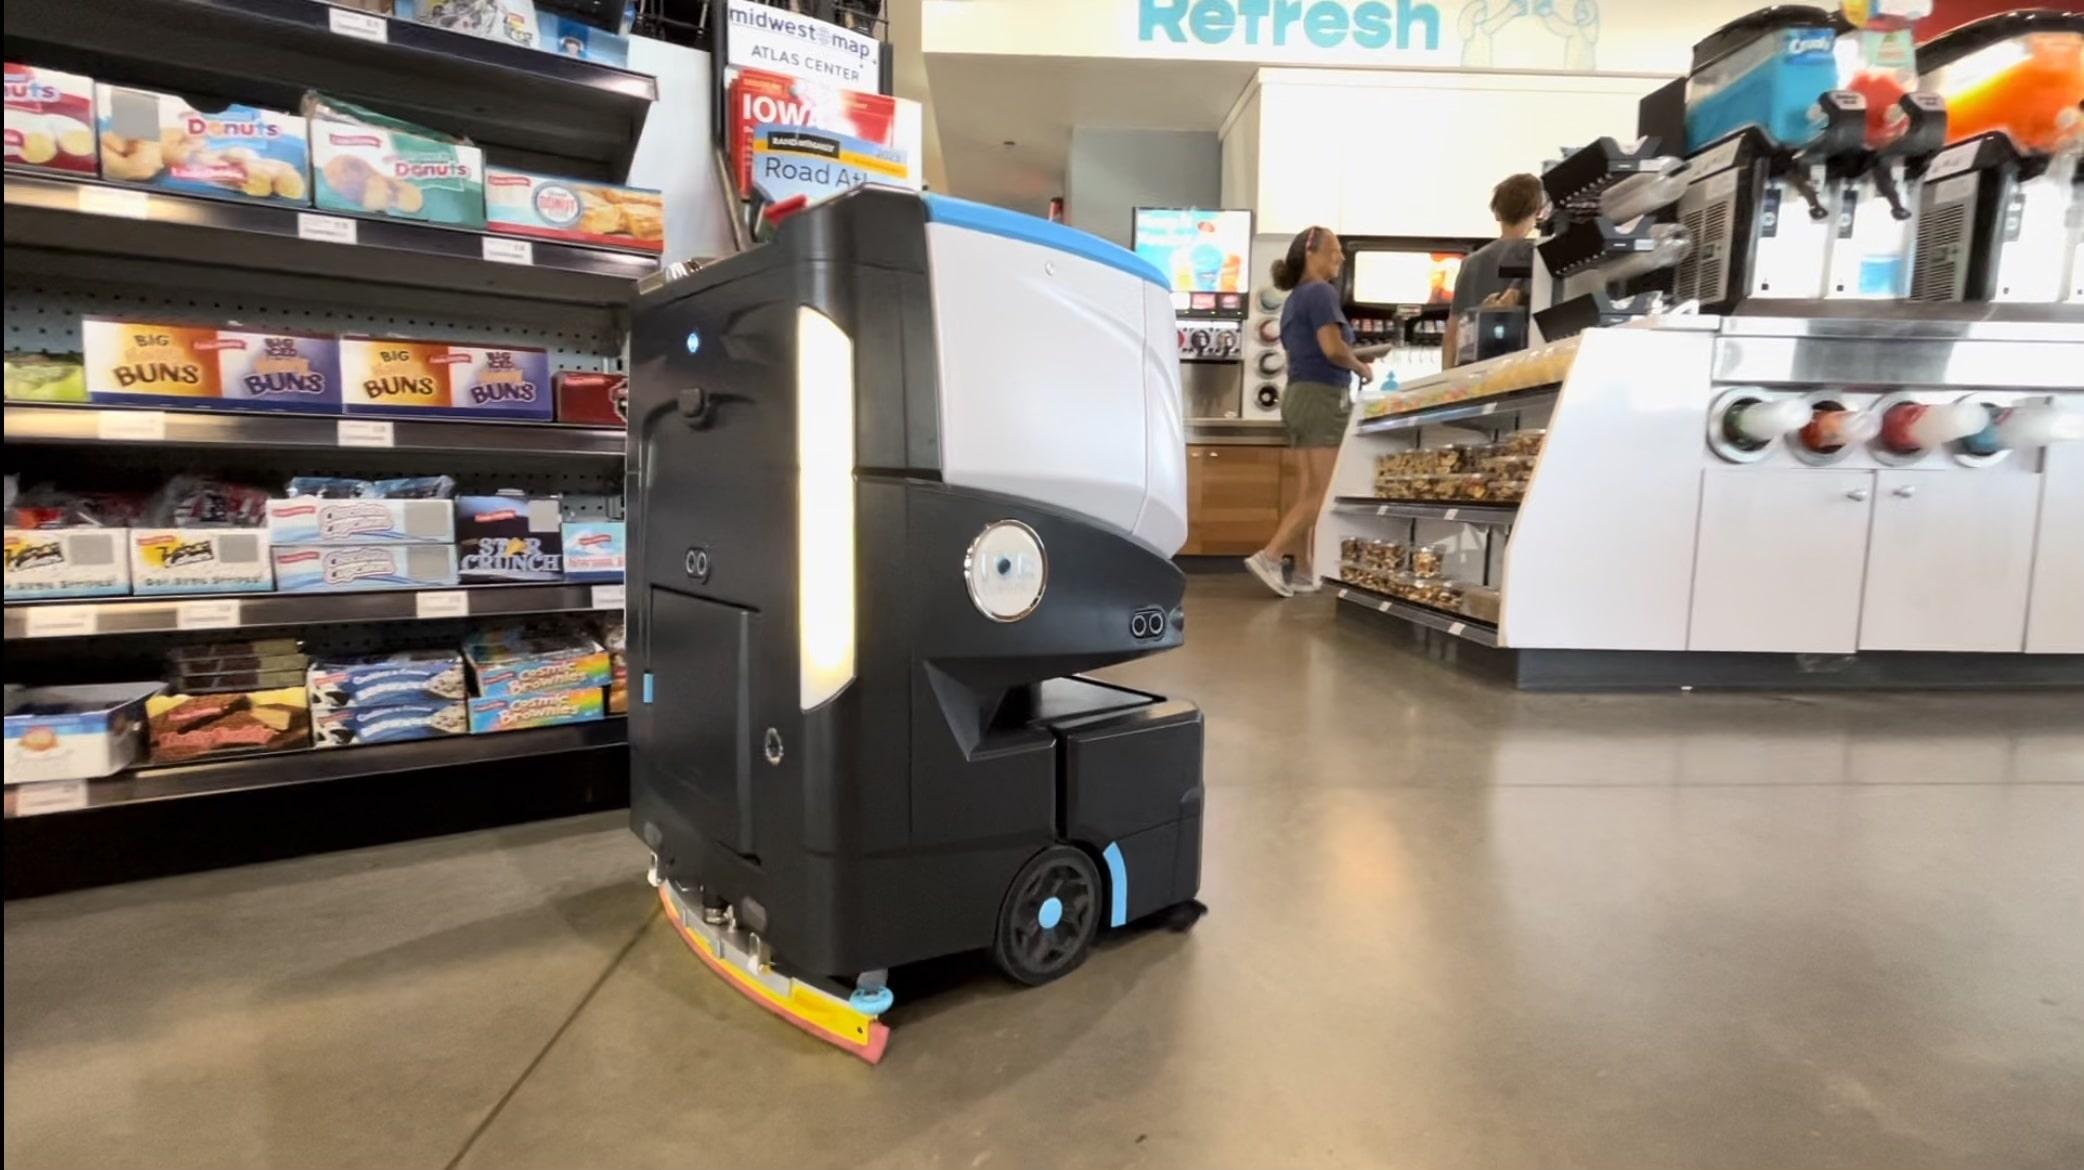 Cobi 18, autonomous floor cleaning robot, cleans at Kum & Go convenience store